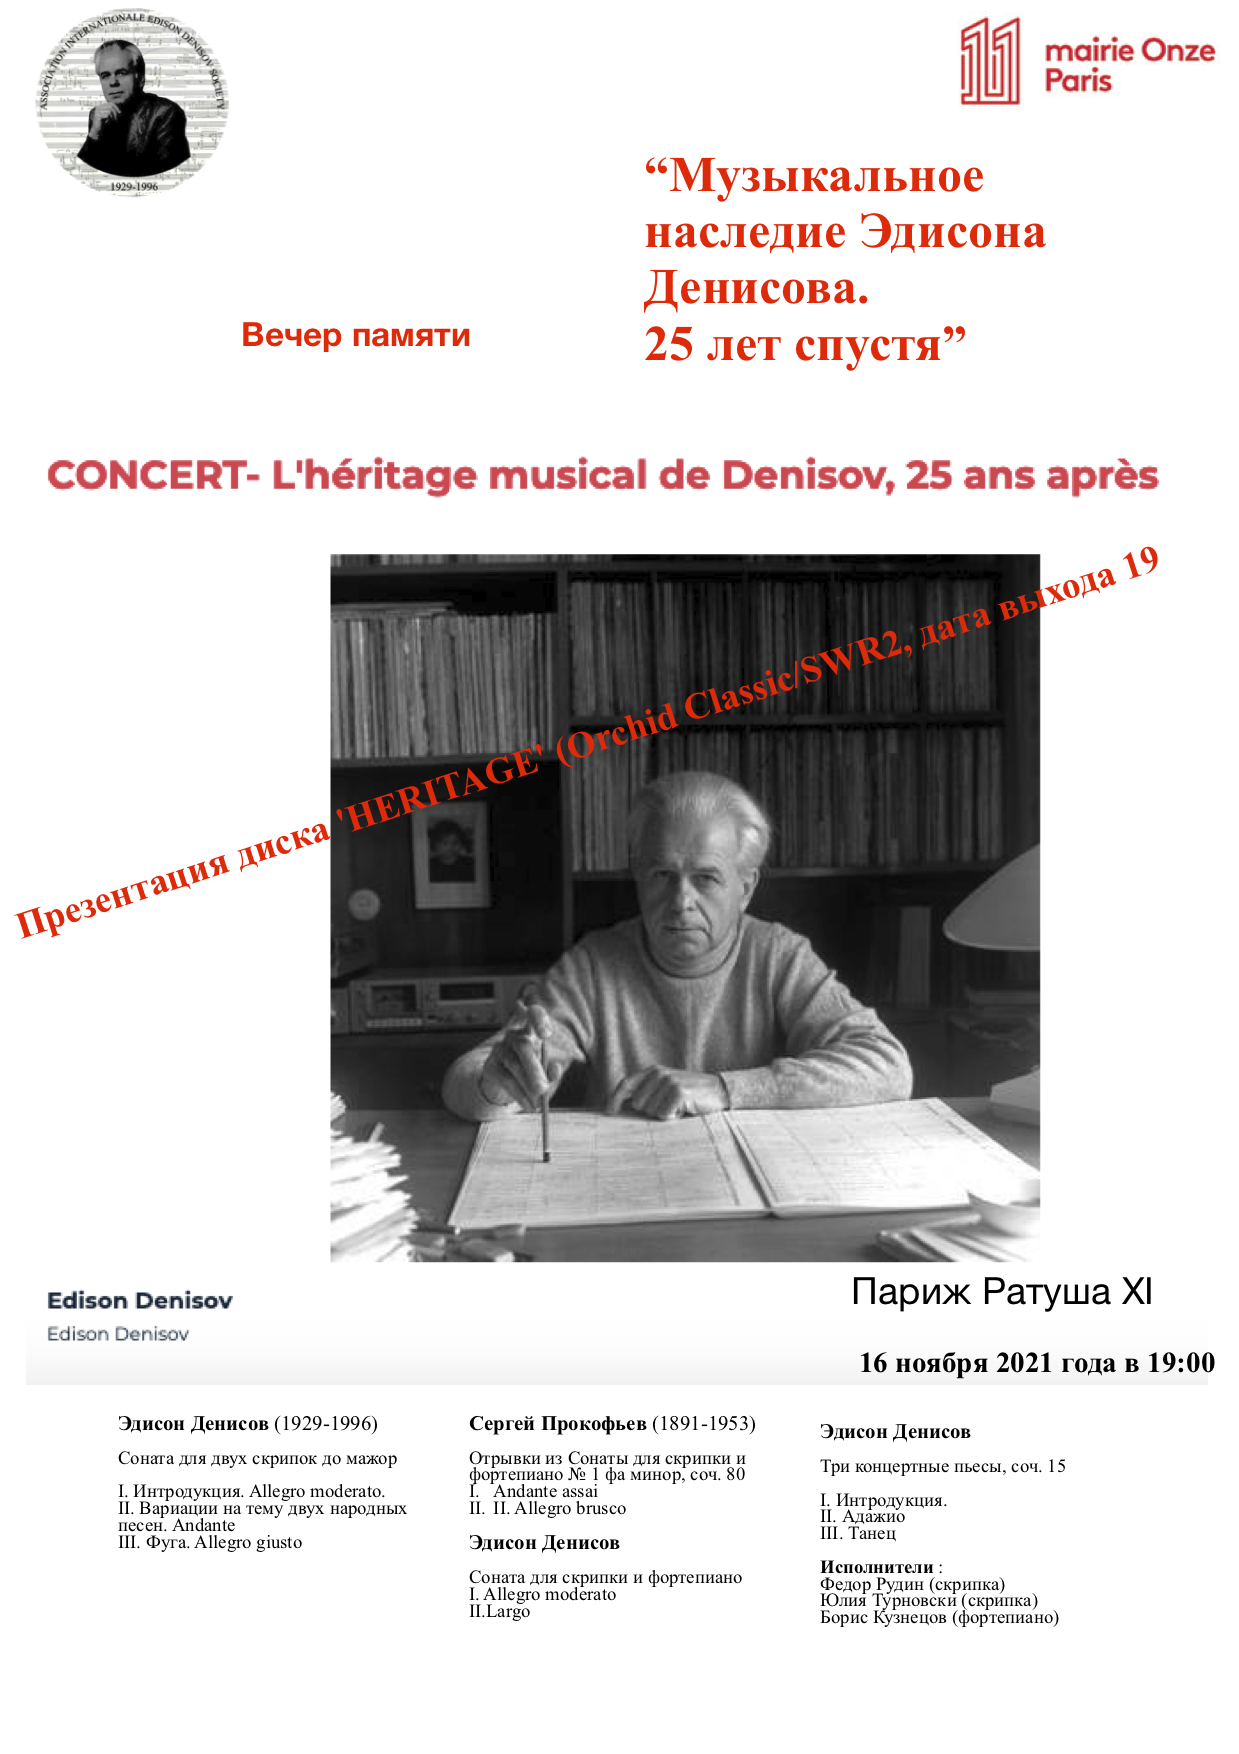 16 novembre 2021 concert Mairie - copie 2.png